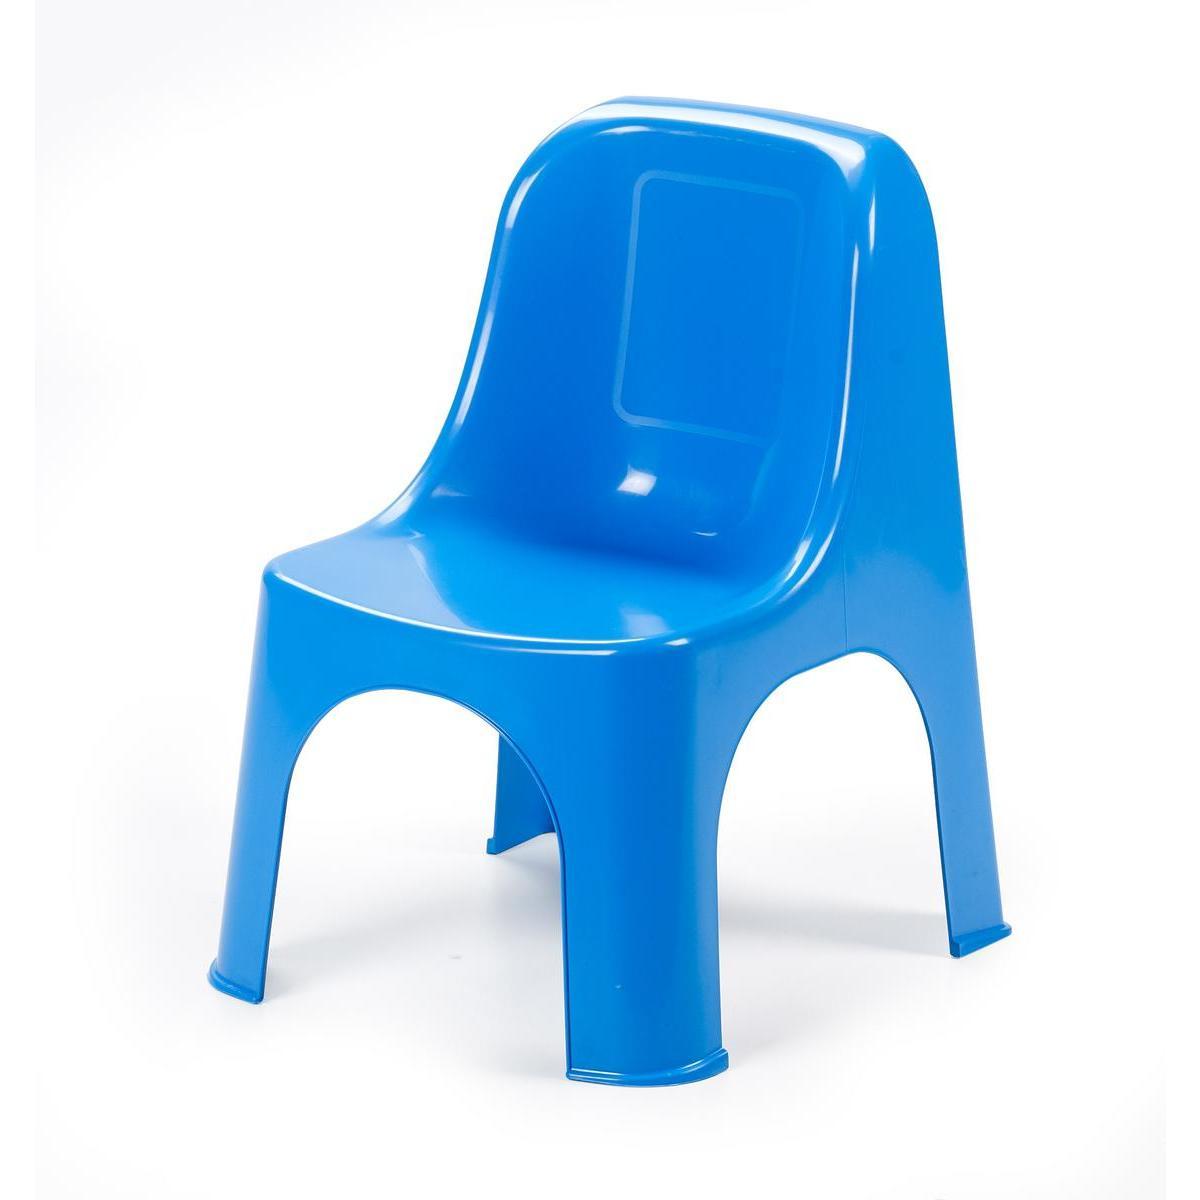 Chaise enfant - Polypropylène - 43 x 38 x H 56 cm - Bleu